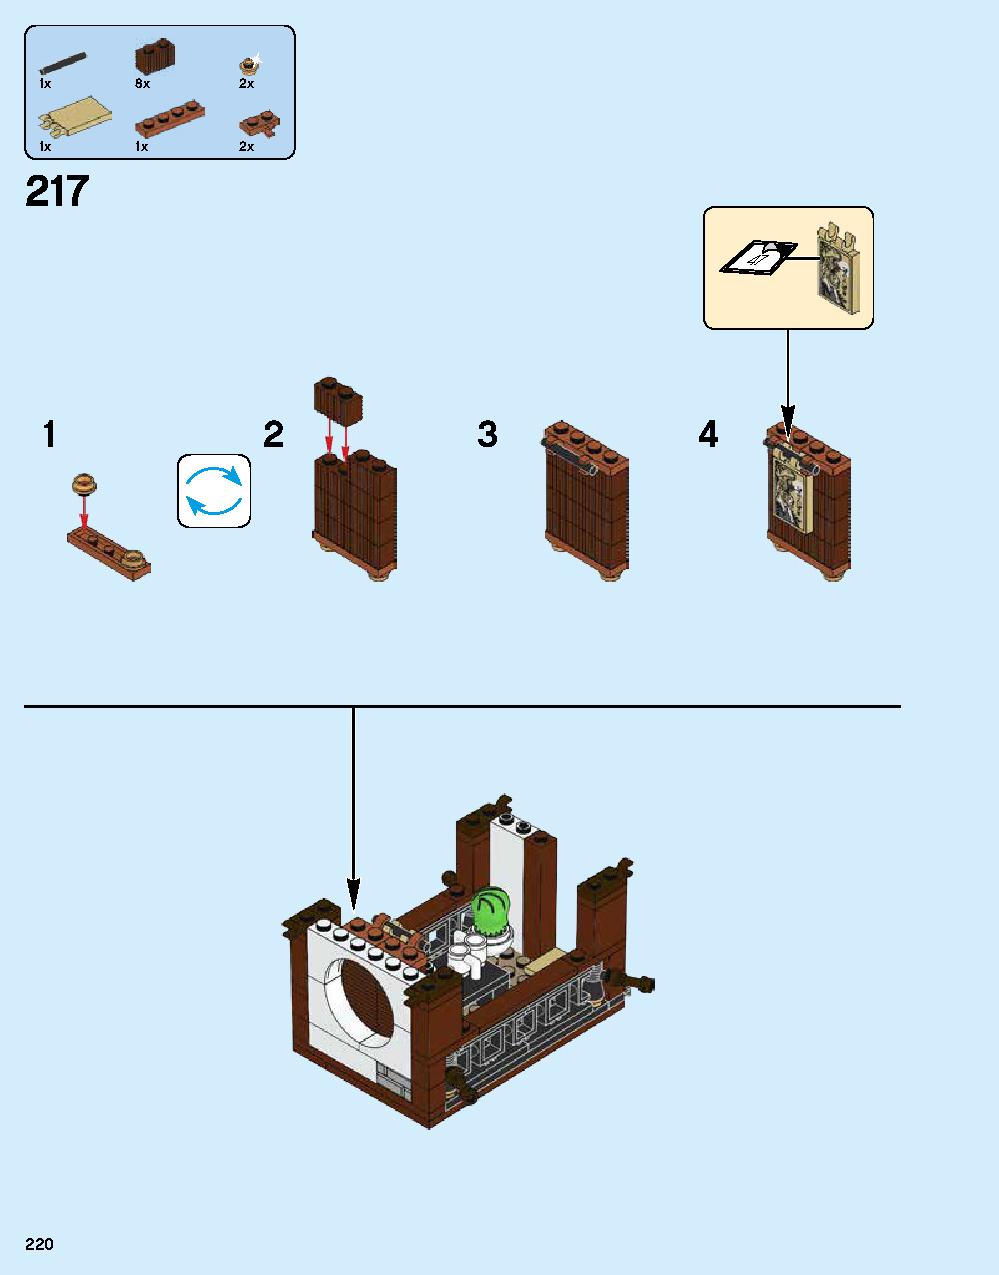 ニンジャゴー シティ 70620 レゴの商品情報 レゴの説明書・組立方法 220 page